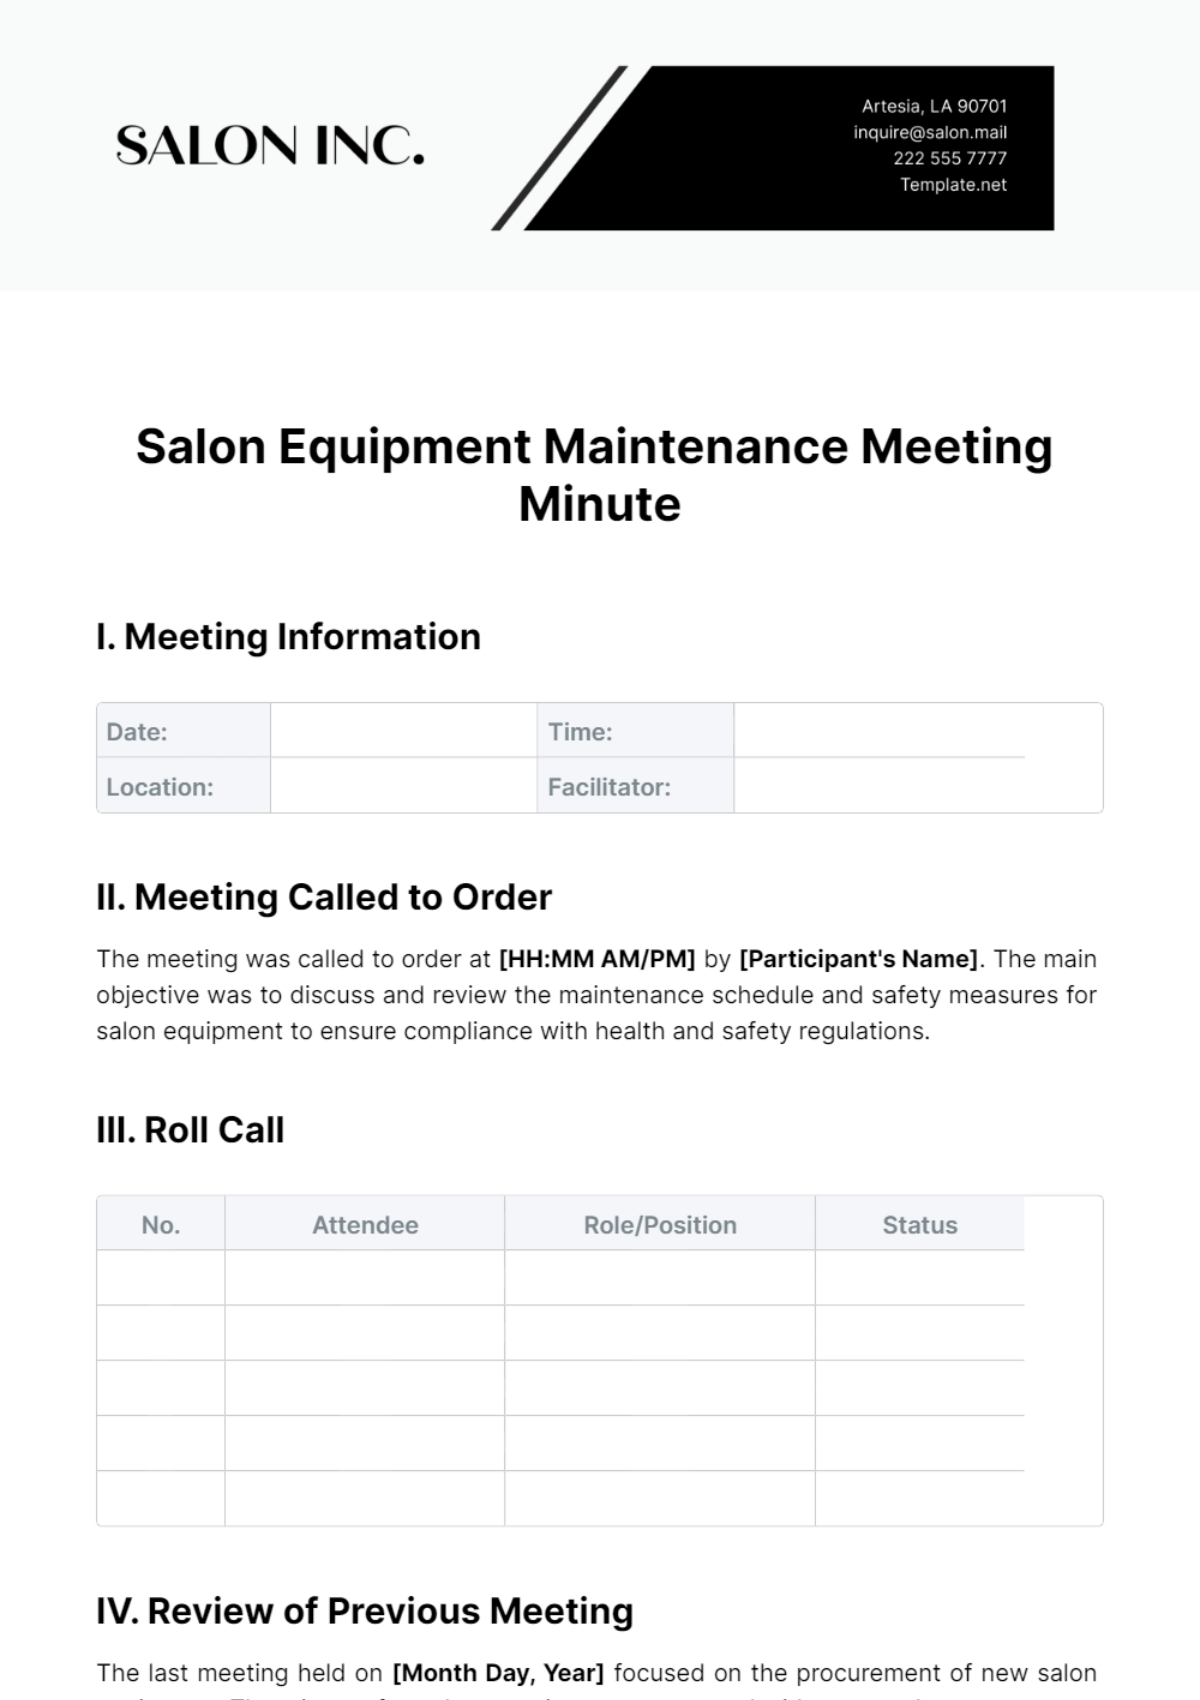 Salon Equipment Maintenance Meeting Minute Template